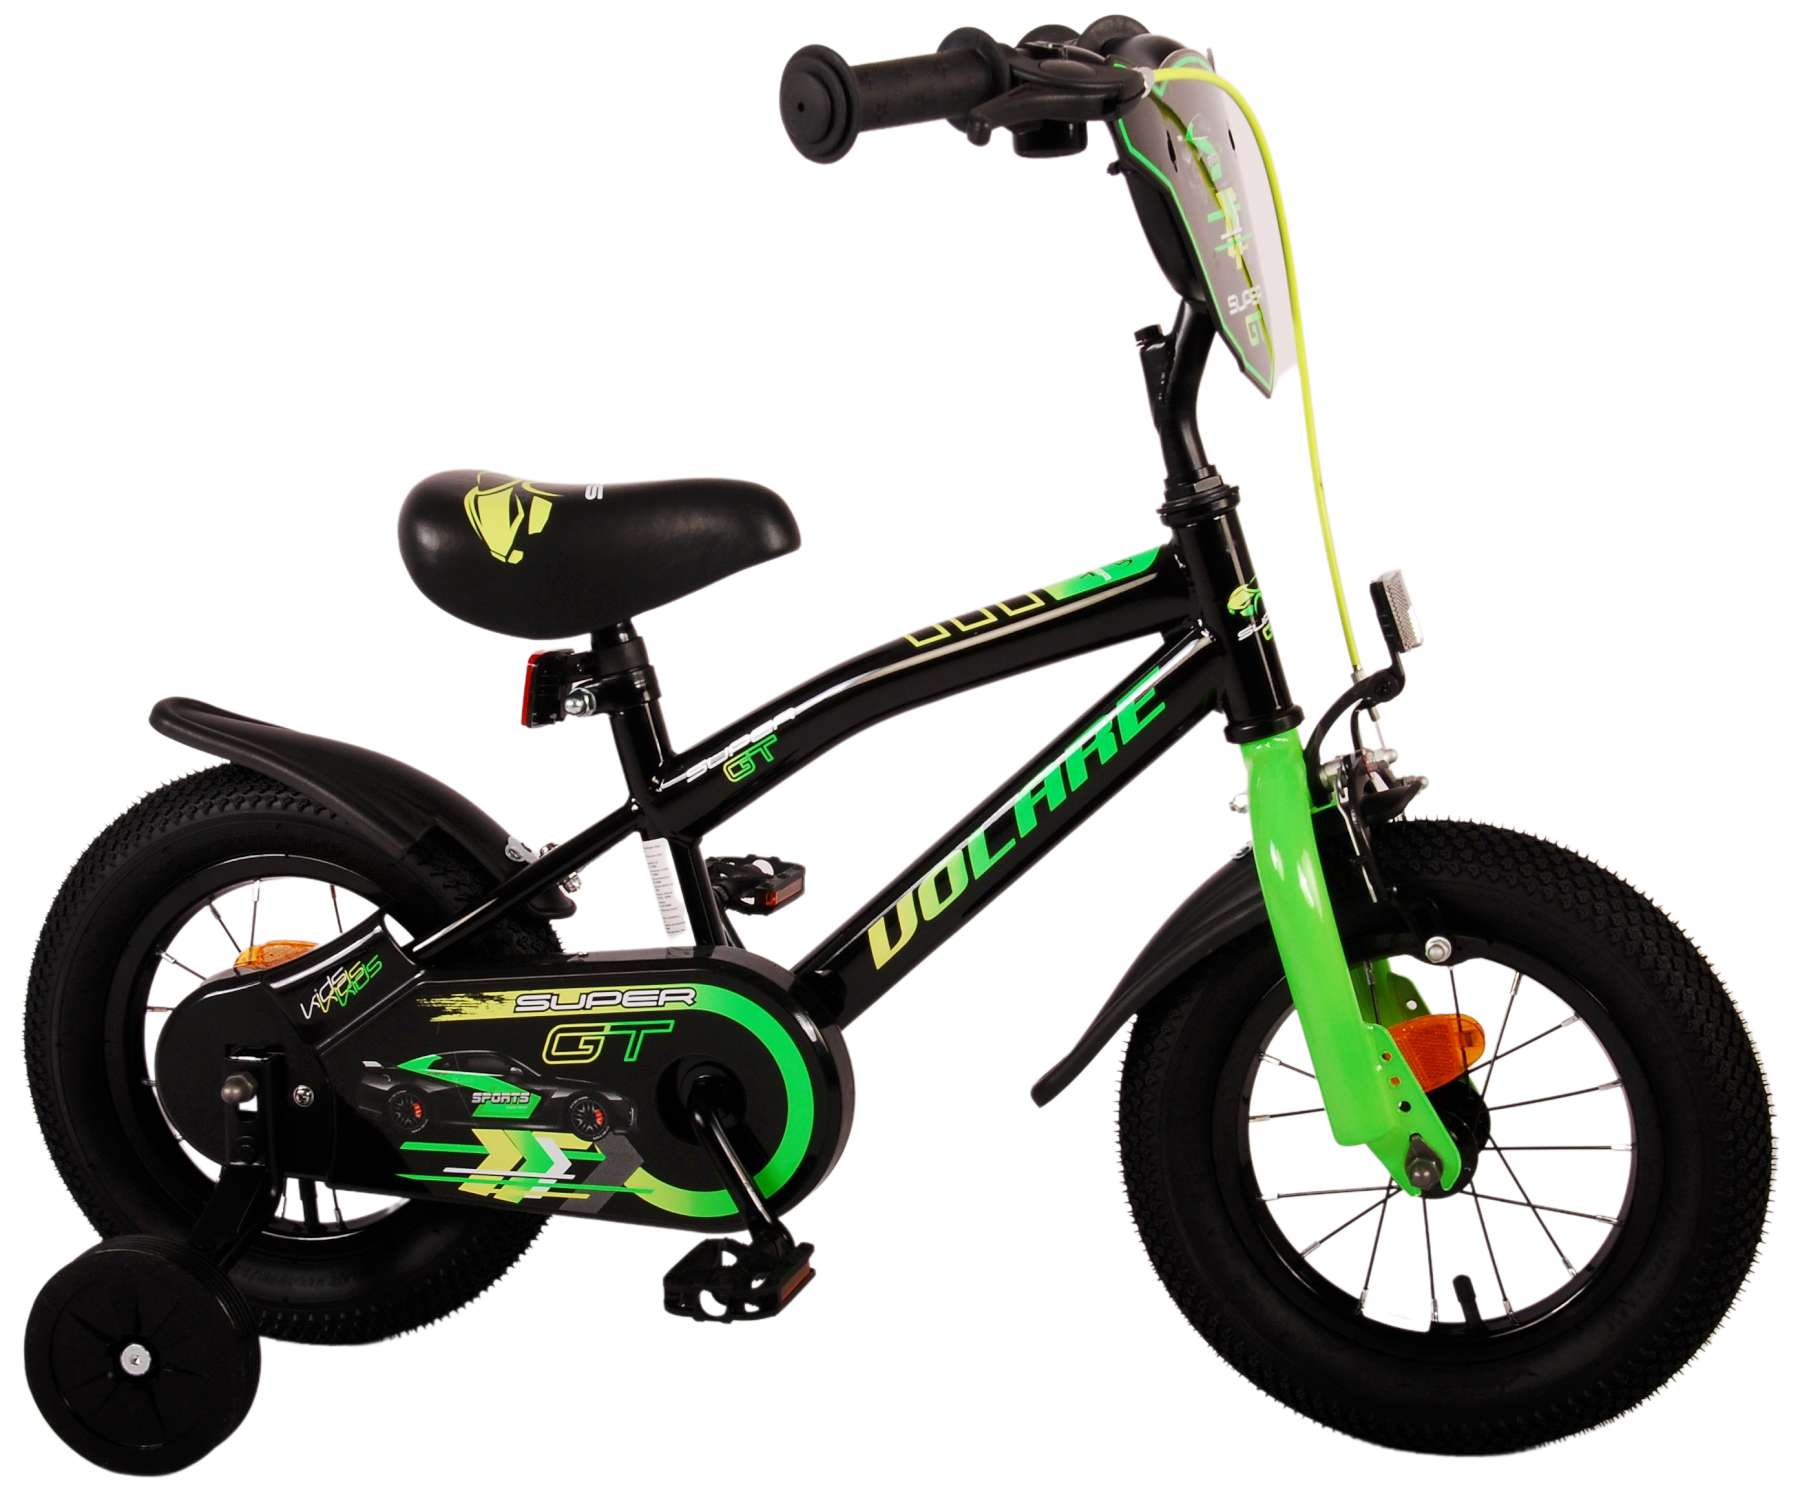 Kinderfahrrad Super GT für Jungen 12 Zoll Kinderrad in Grün Fahrrad